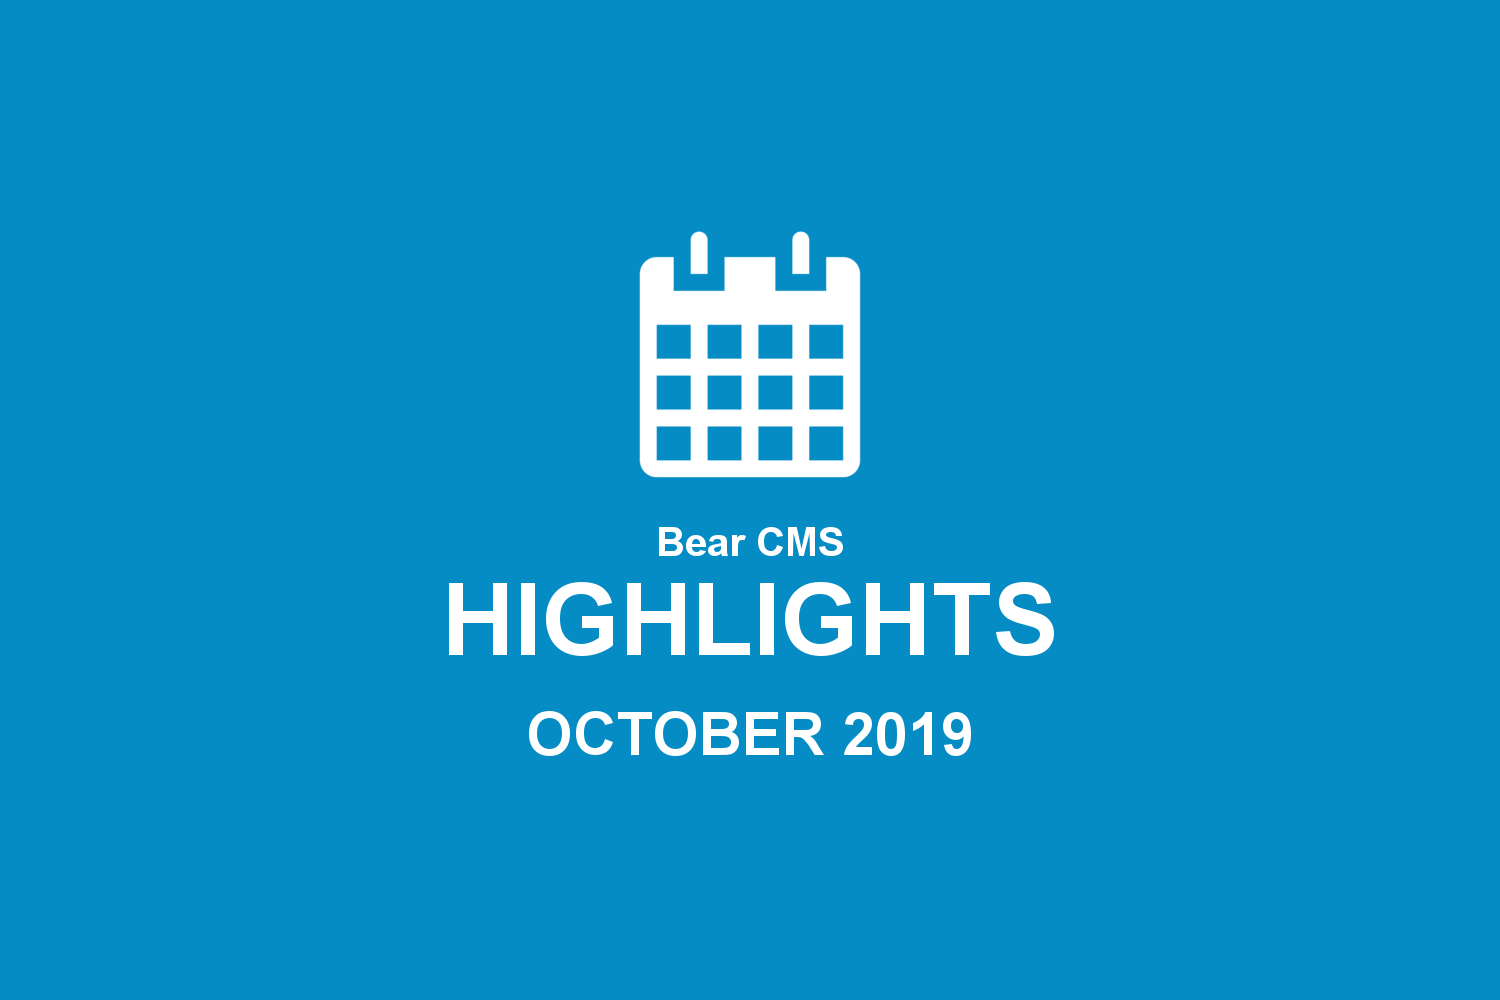 Bear CMS highlights (October 2019)